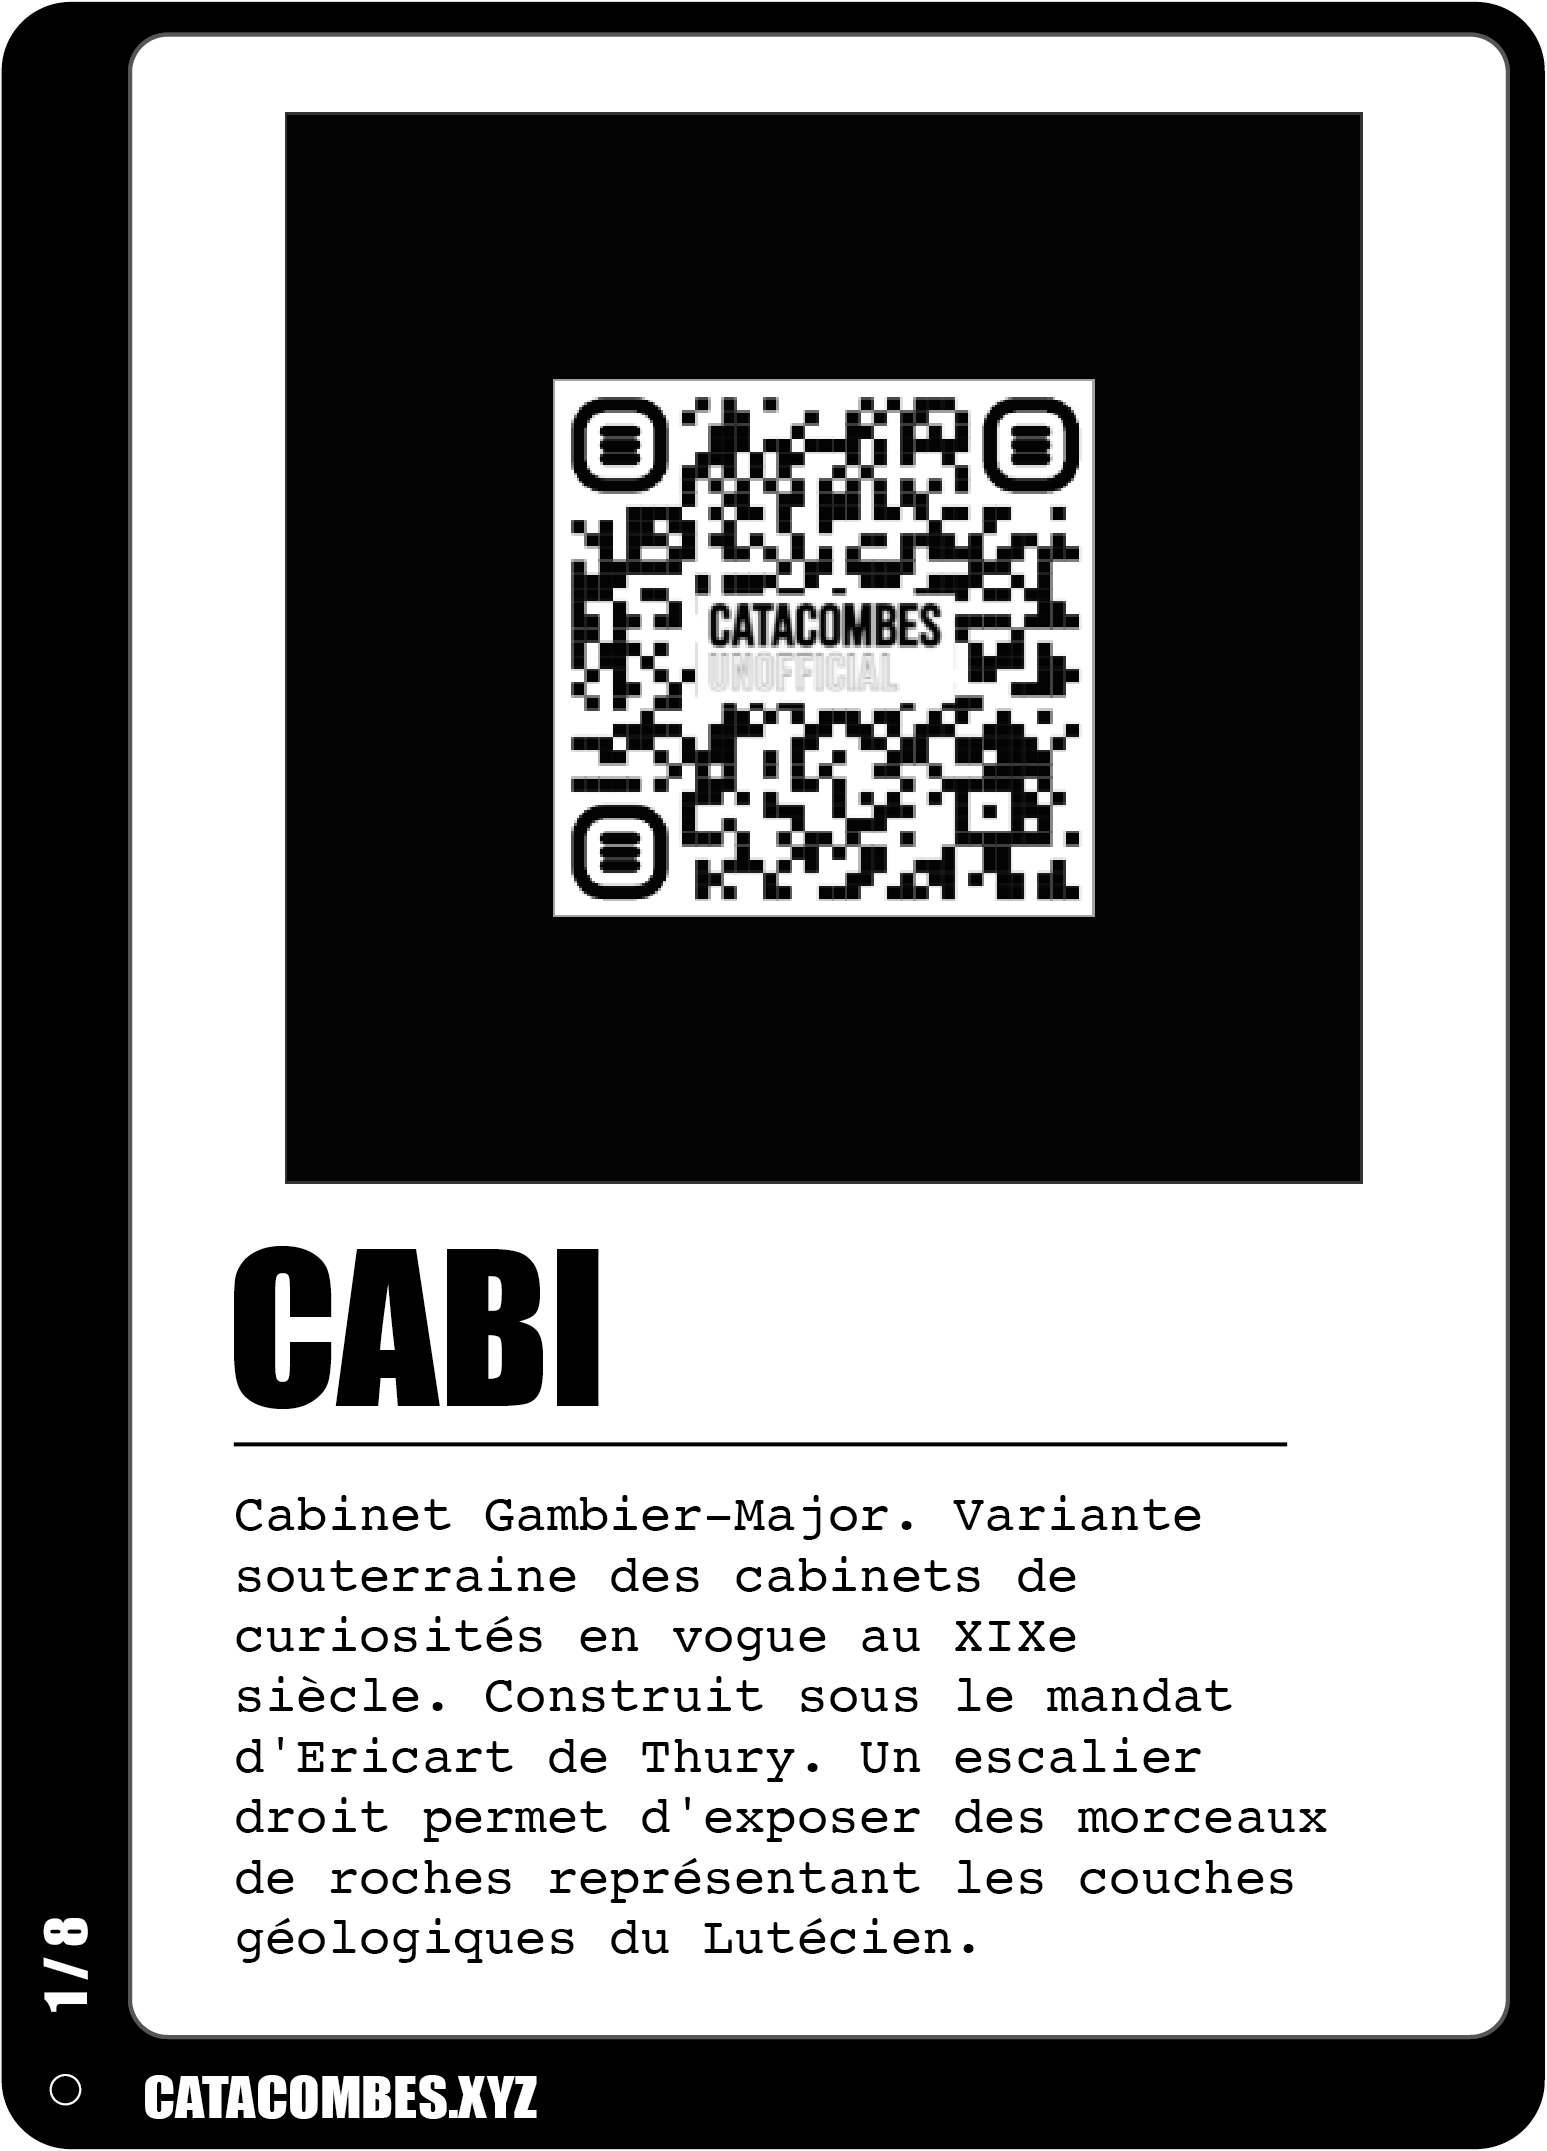 QR code permettant de faire apparaitre la salle Cabi en AR ainsi que des informations